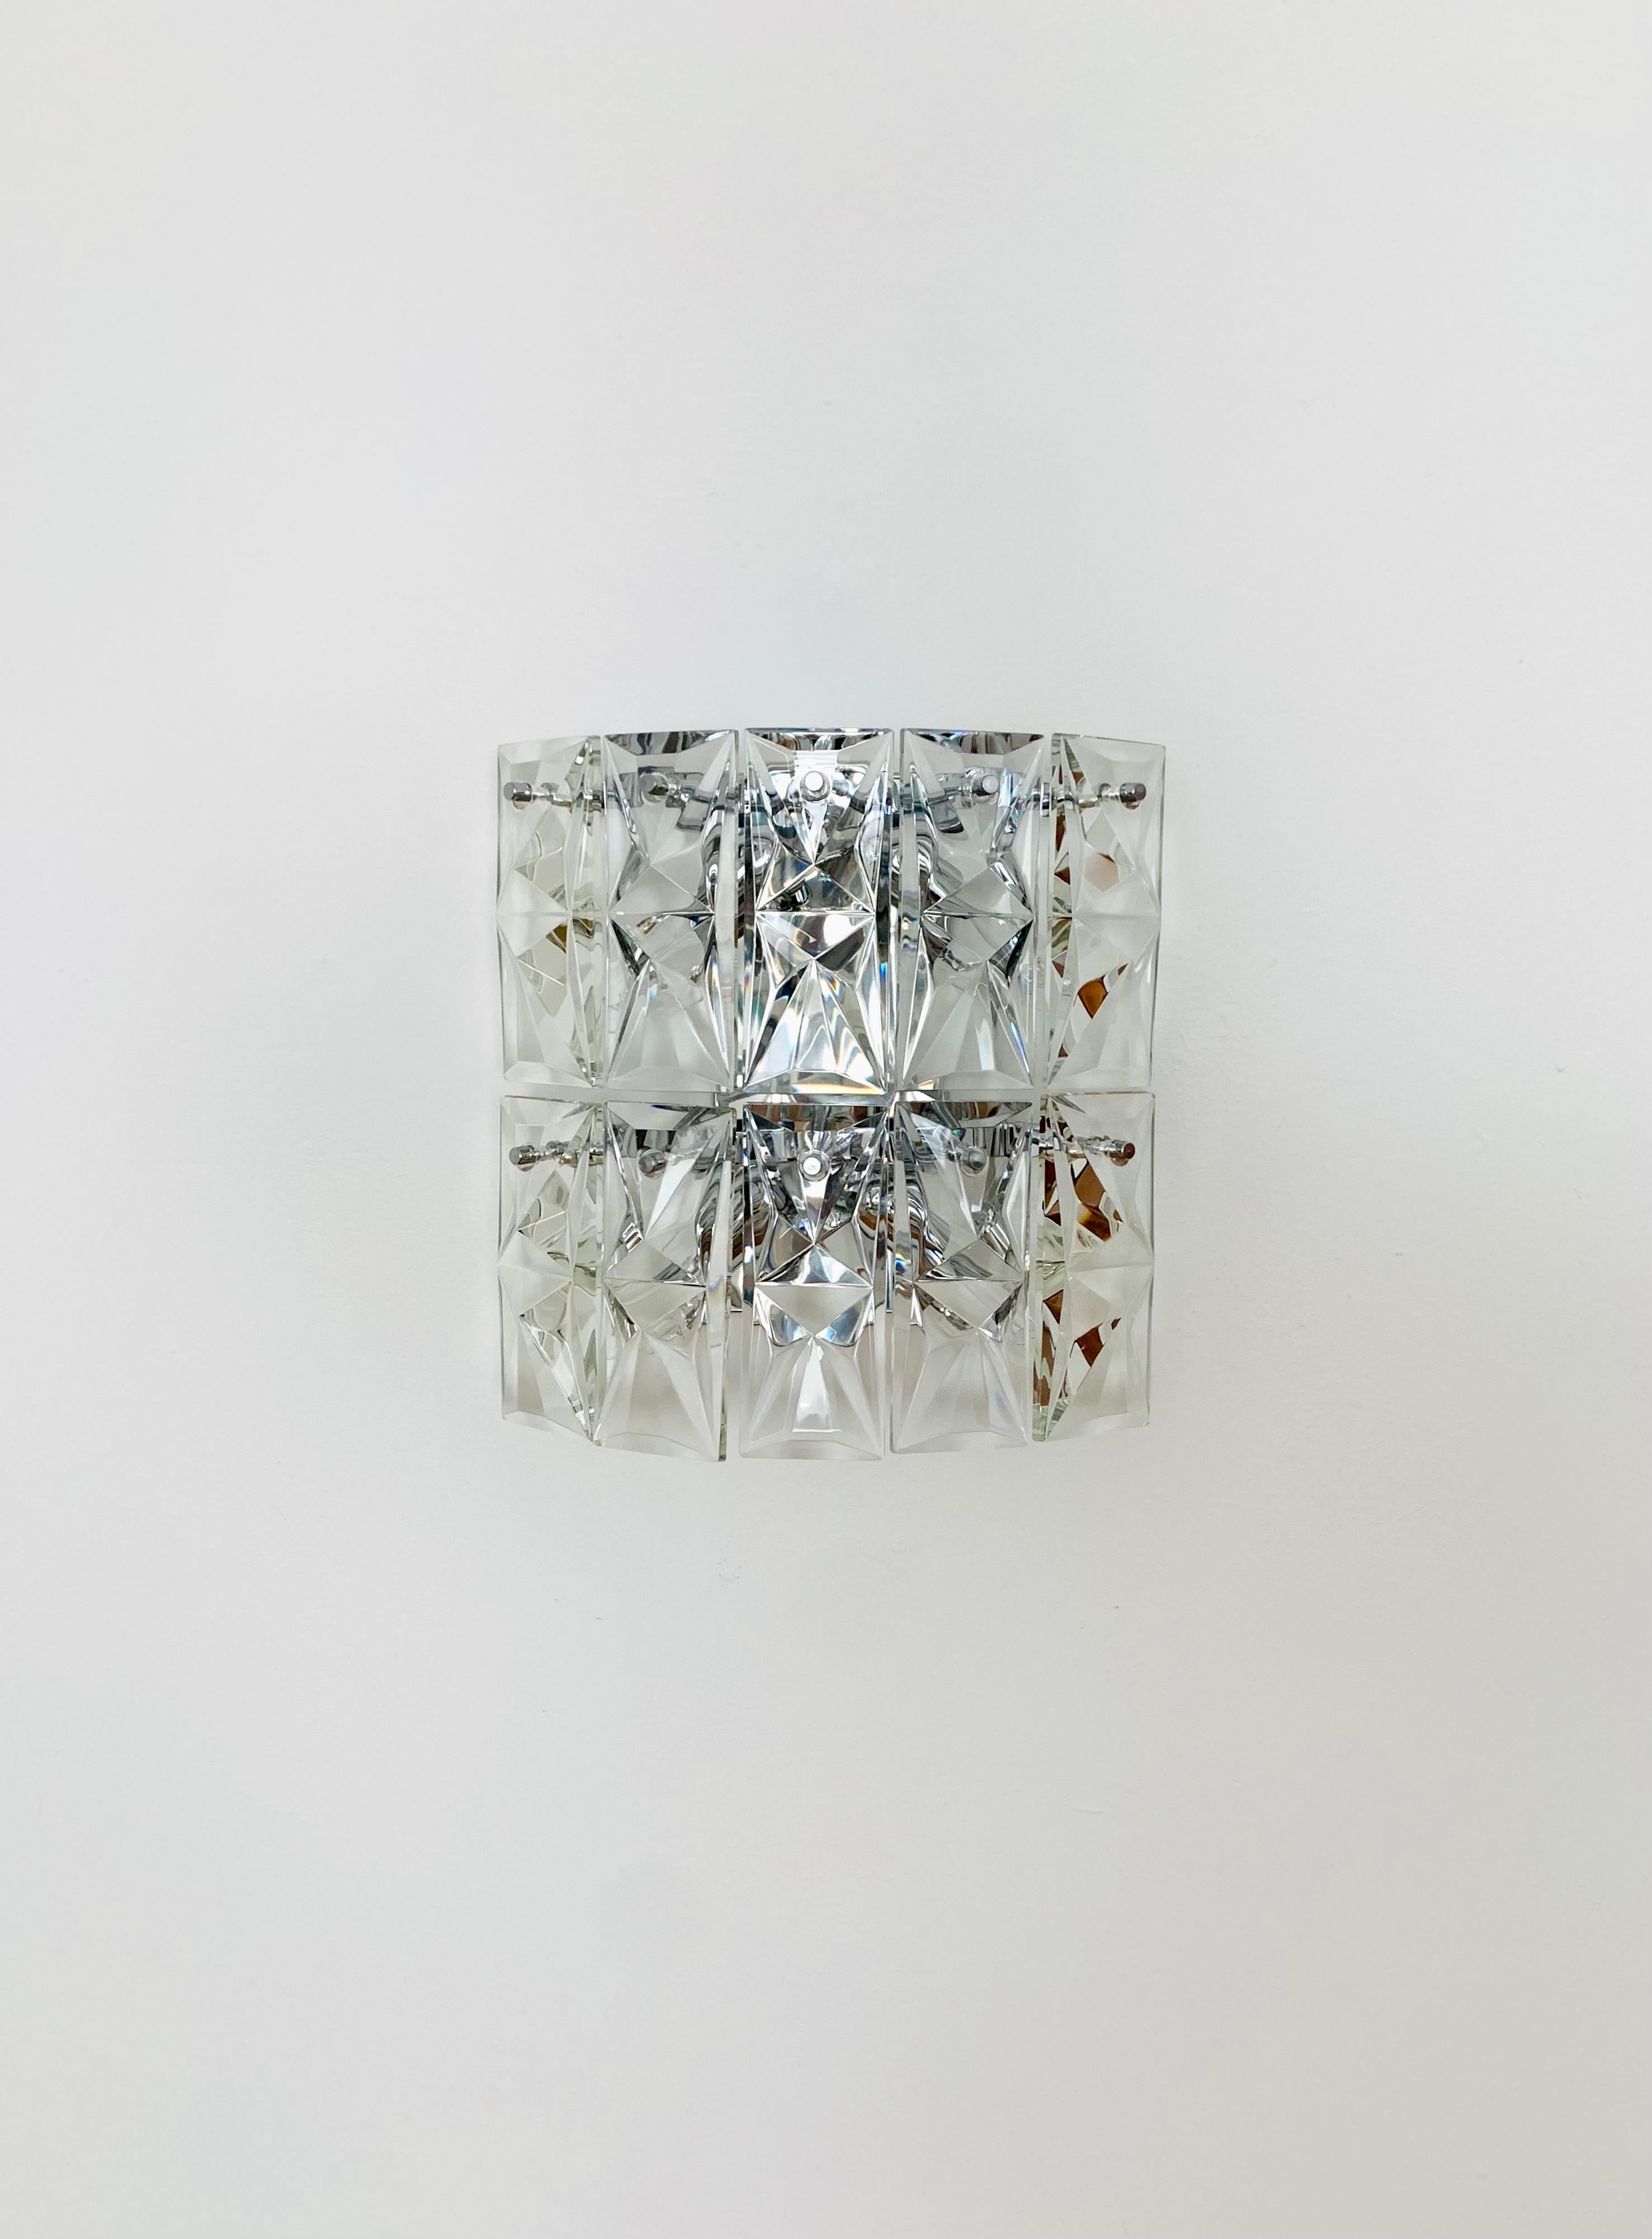 Grandes appliques en verre cristallin des années 1960.
Version exceptionnellement grande avec 10 cristaux lourds chacun.
Traitement très noble et de grande qualité.
Le design et les éléments en verre créent un très beau jeu de lumière.

Condit